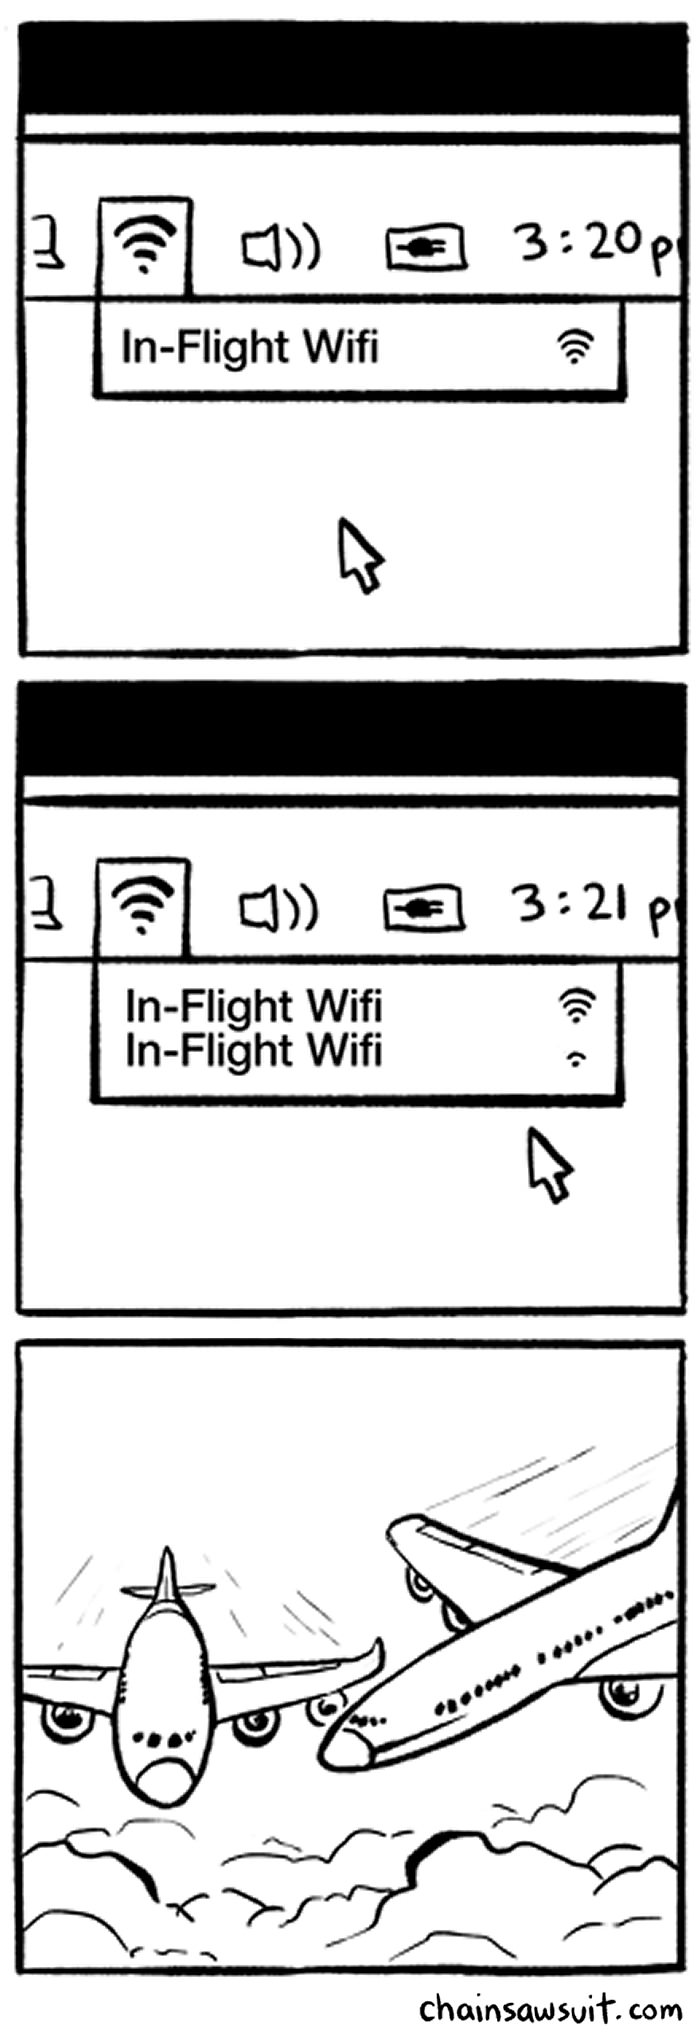 in_flight_wifi.jpg